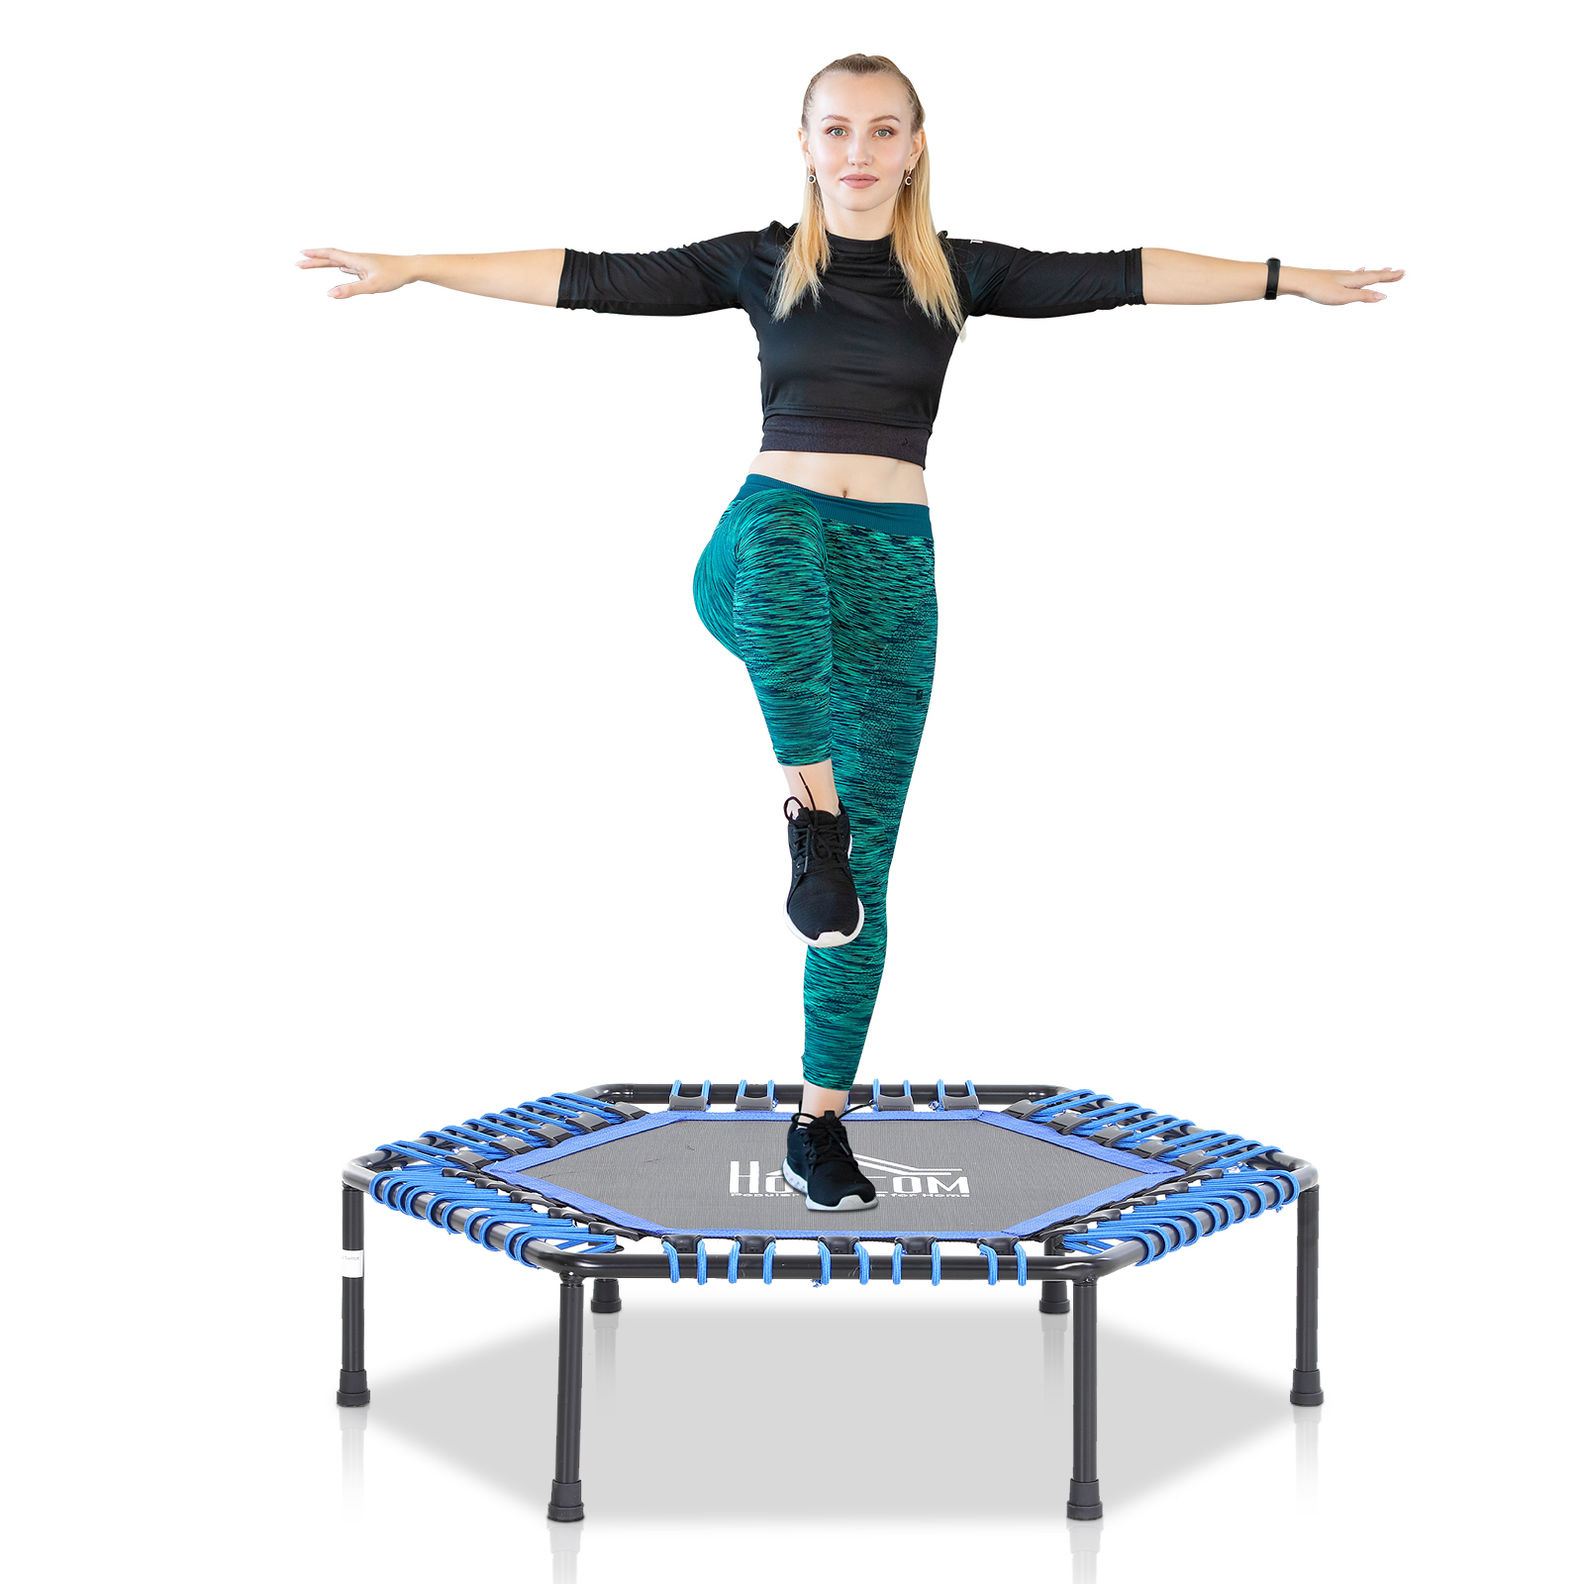 Fitness-Trampolin für Yoga Farbe: blau bestellen | Weltbild.de